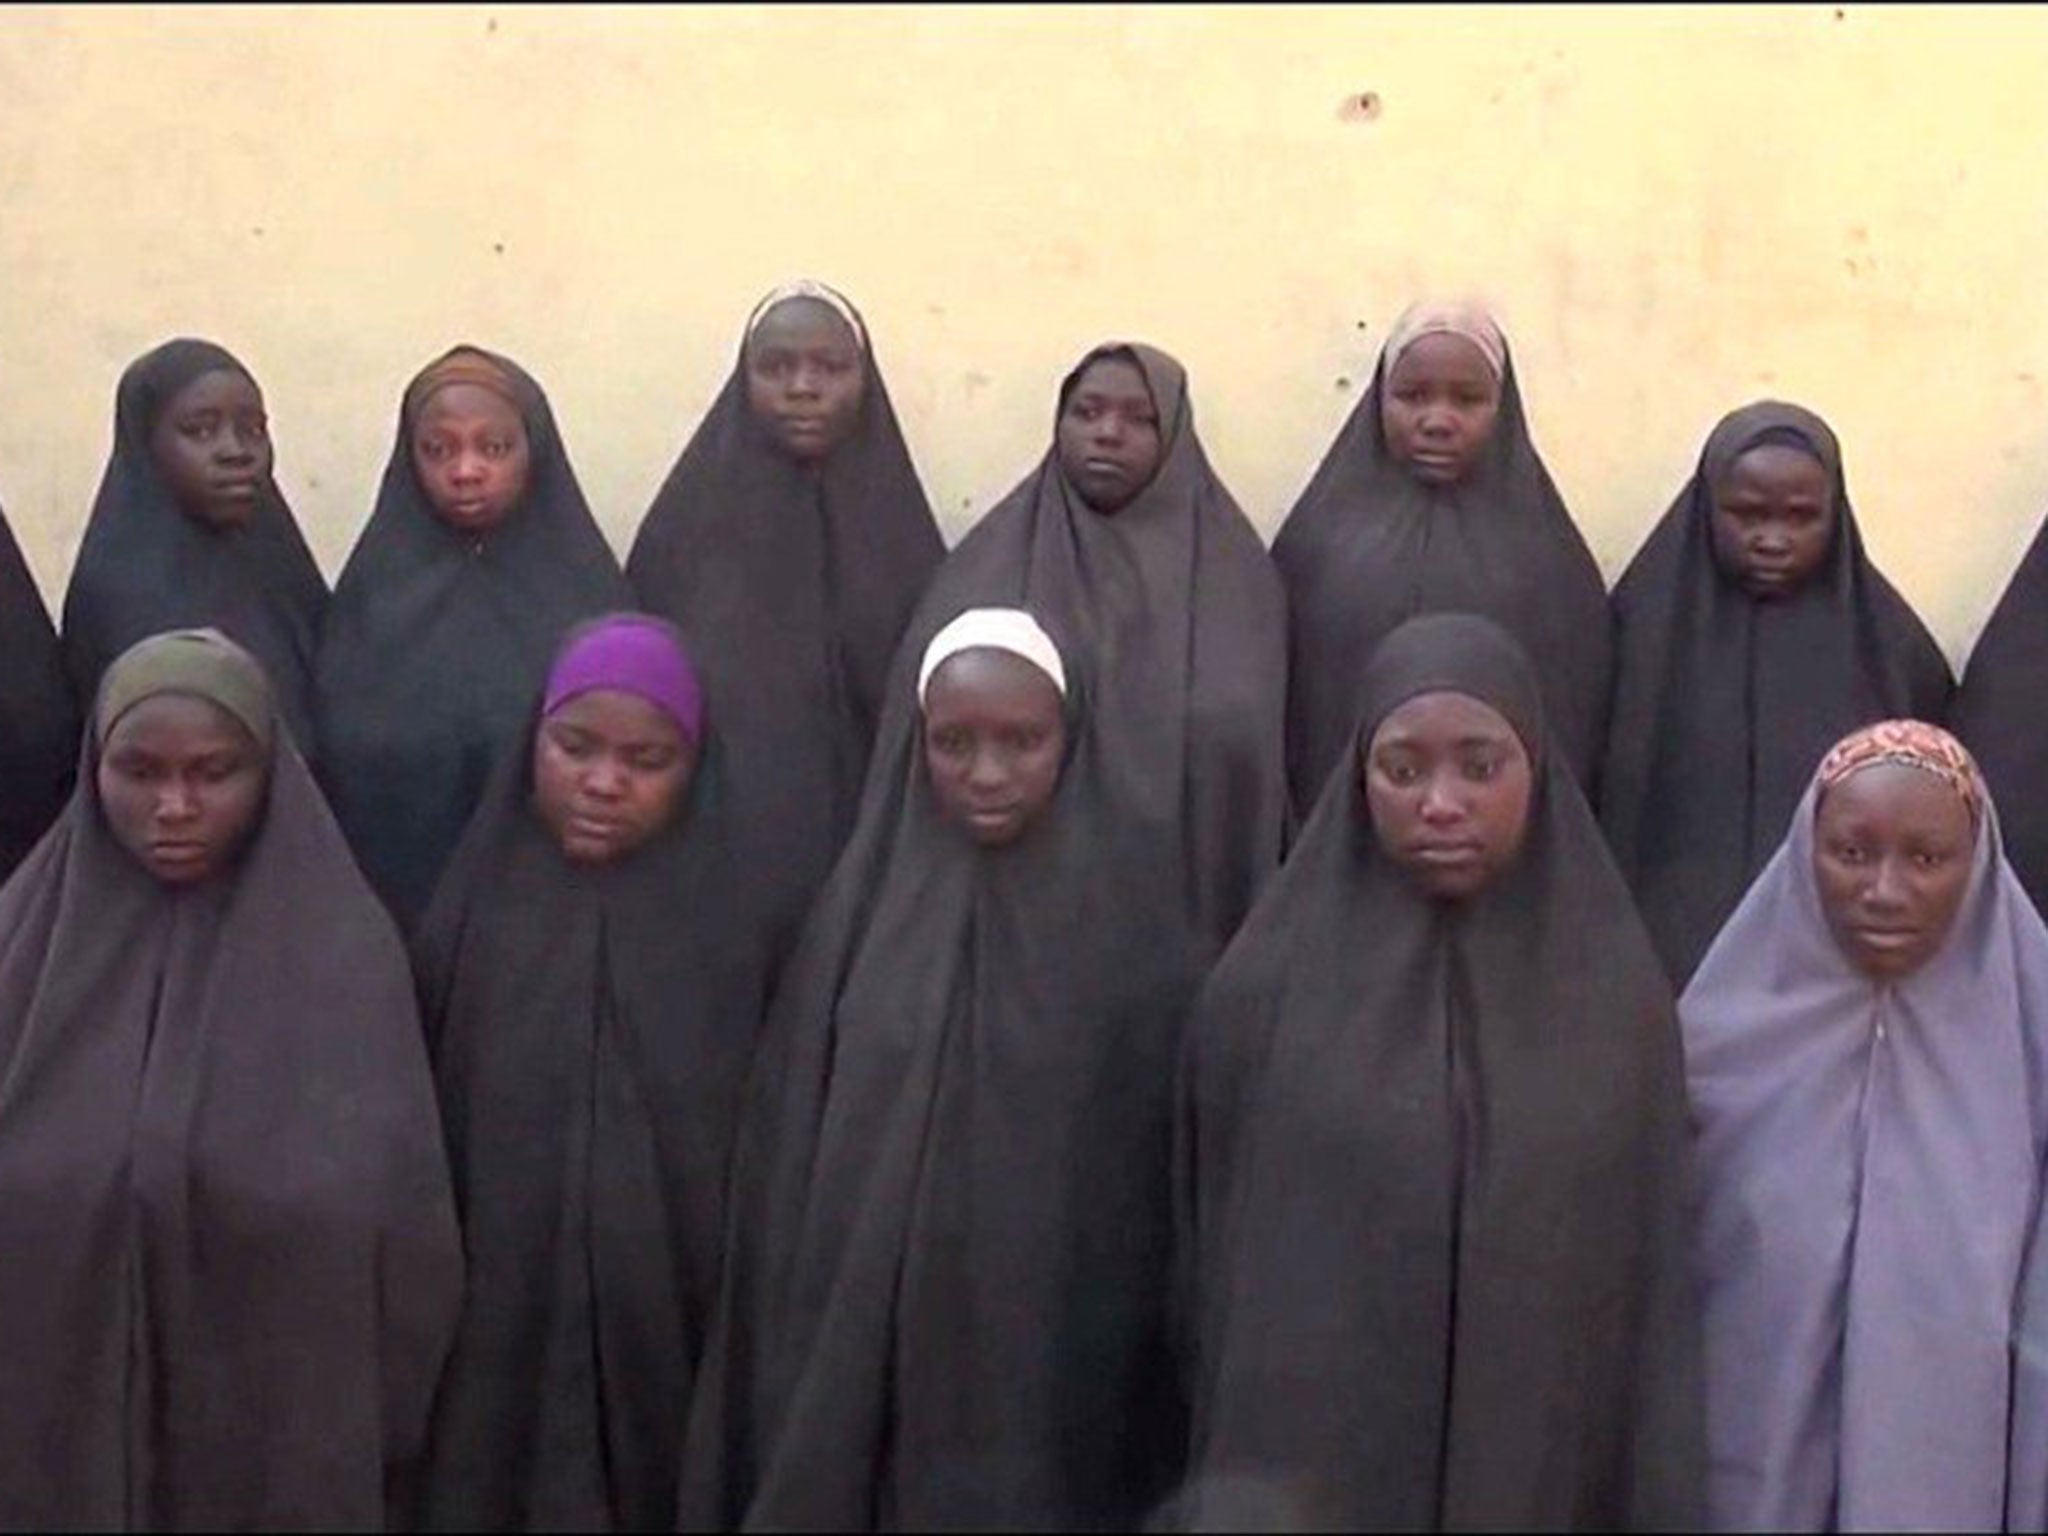 Boko Haram kidnapped 276 girls from Chibok in April 2014